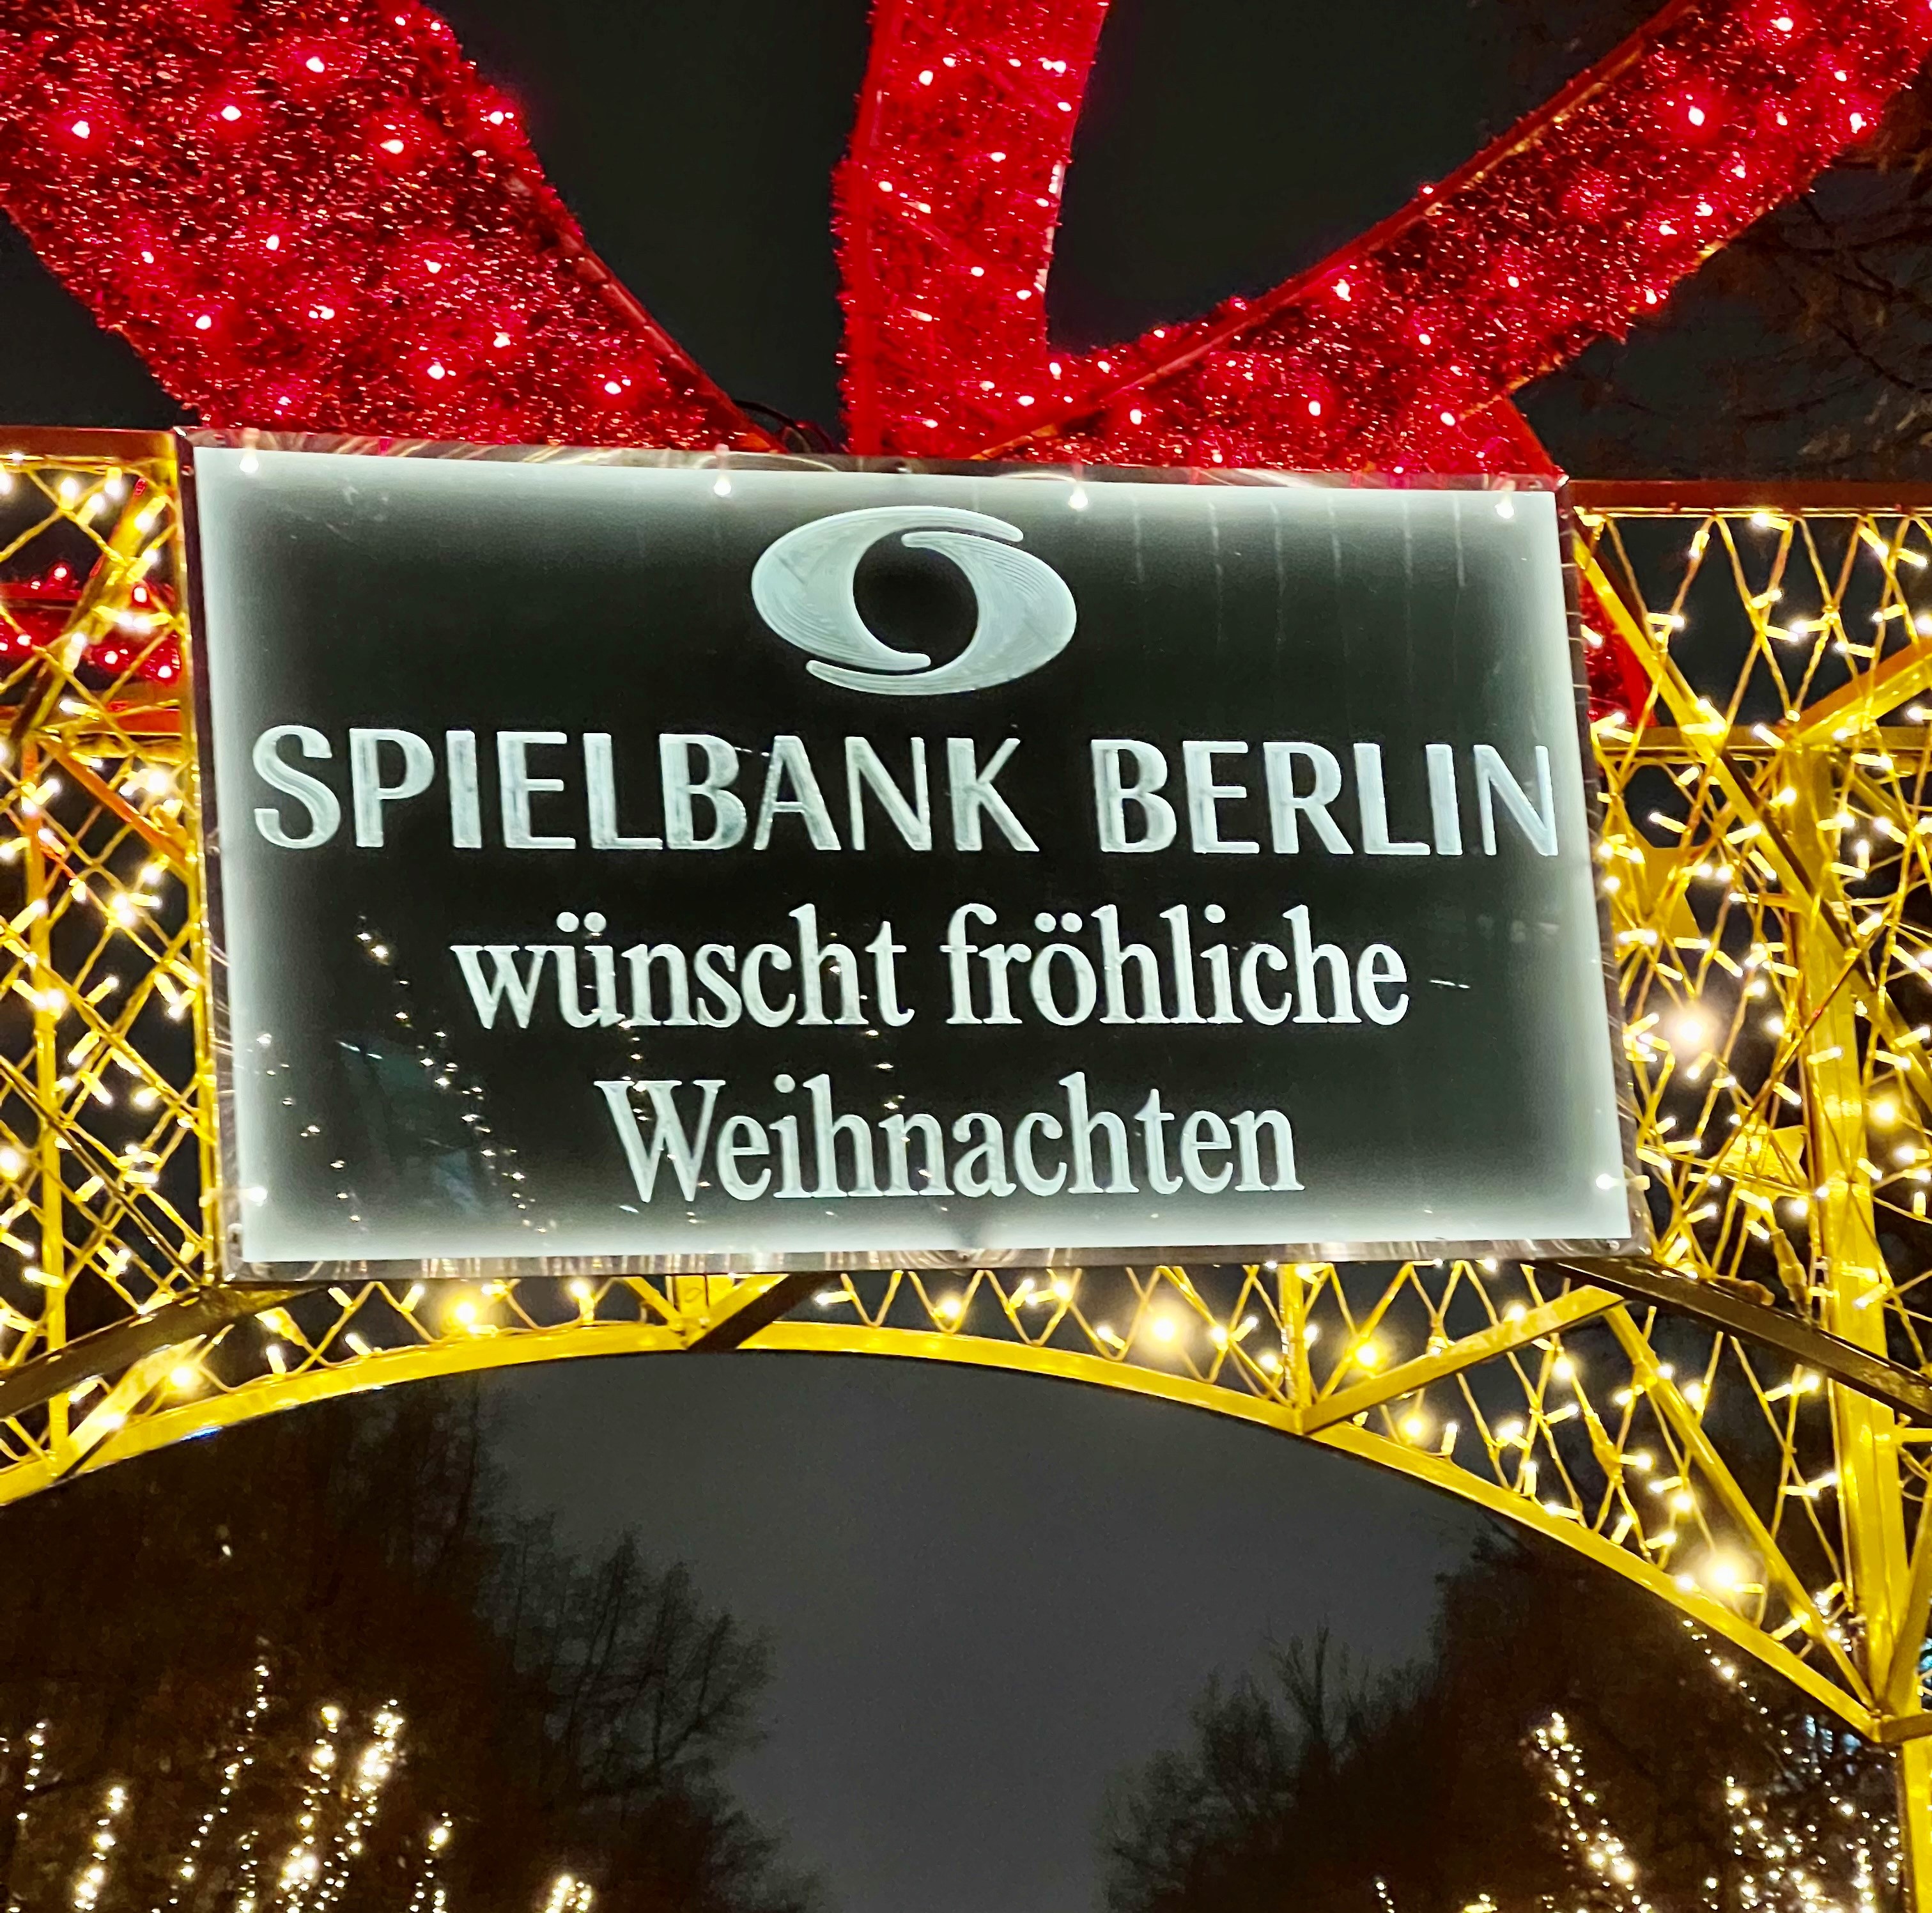 Weihnachtsbeleuchtung bringt festlichen Glanz in Berlins Mitte - Spielbank Berlin lässt Unter den Linden bis zum Brandenburger Tor leuchten